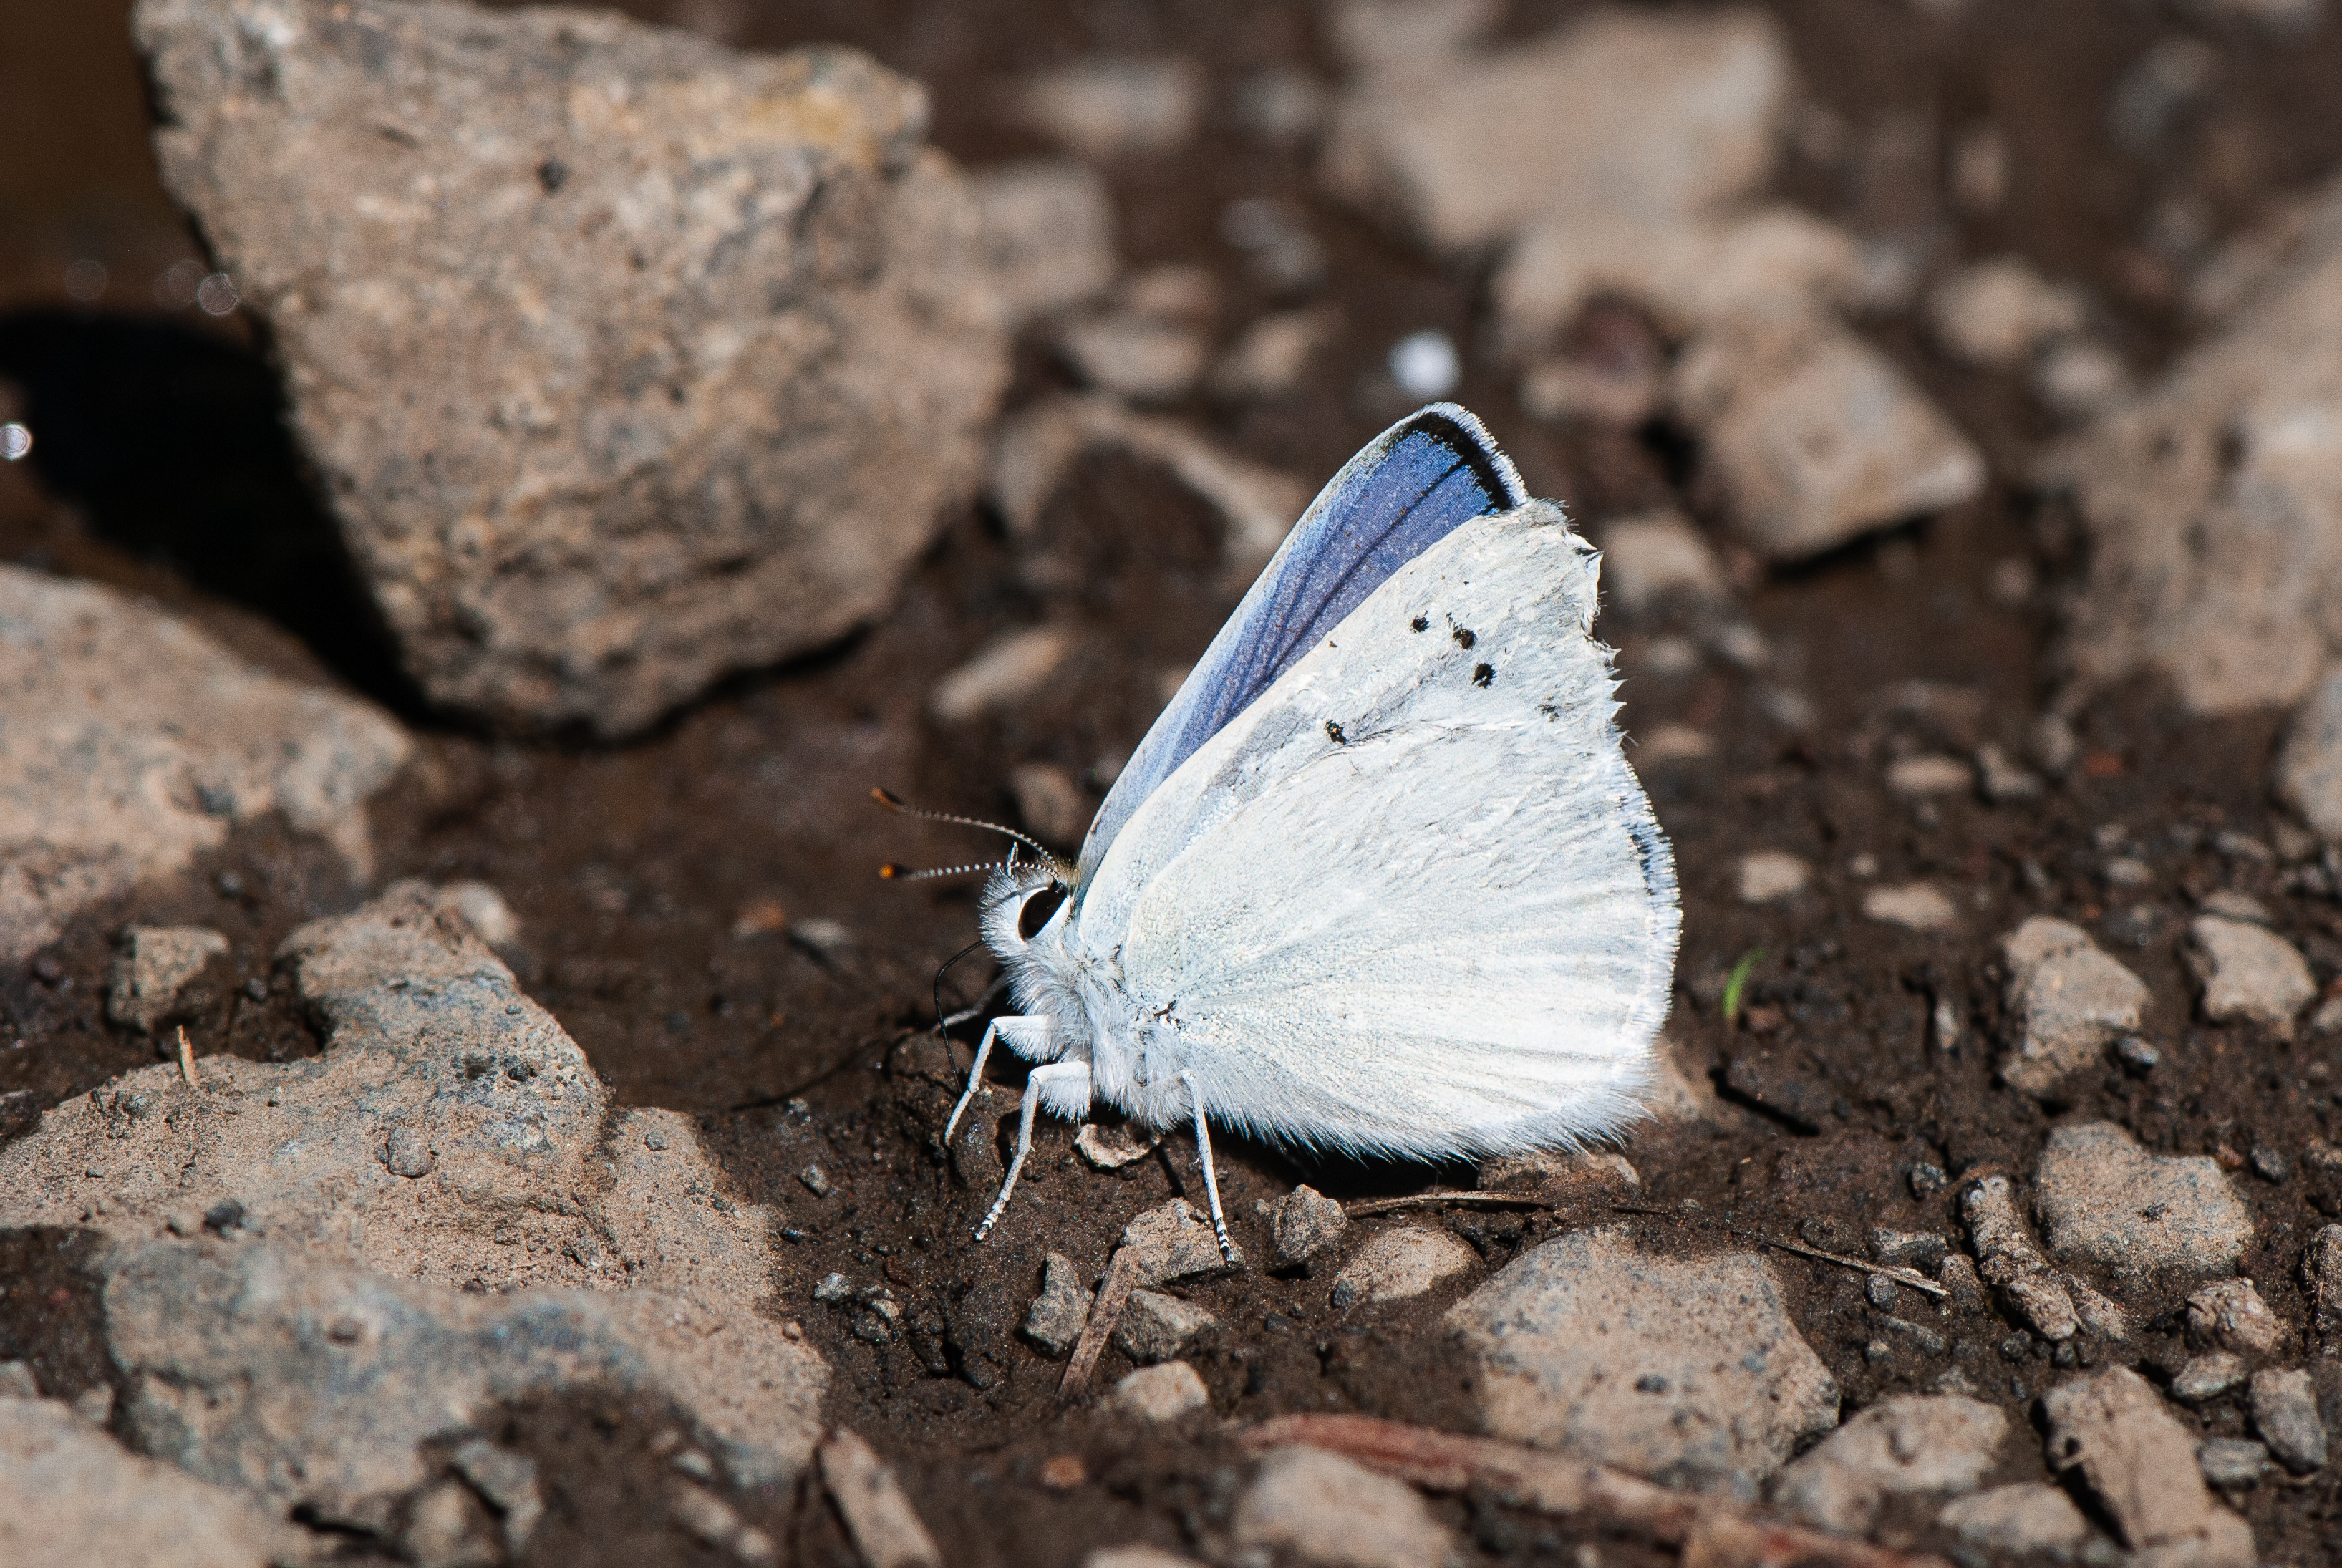 Blue Copper butterfly